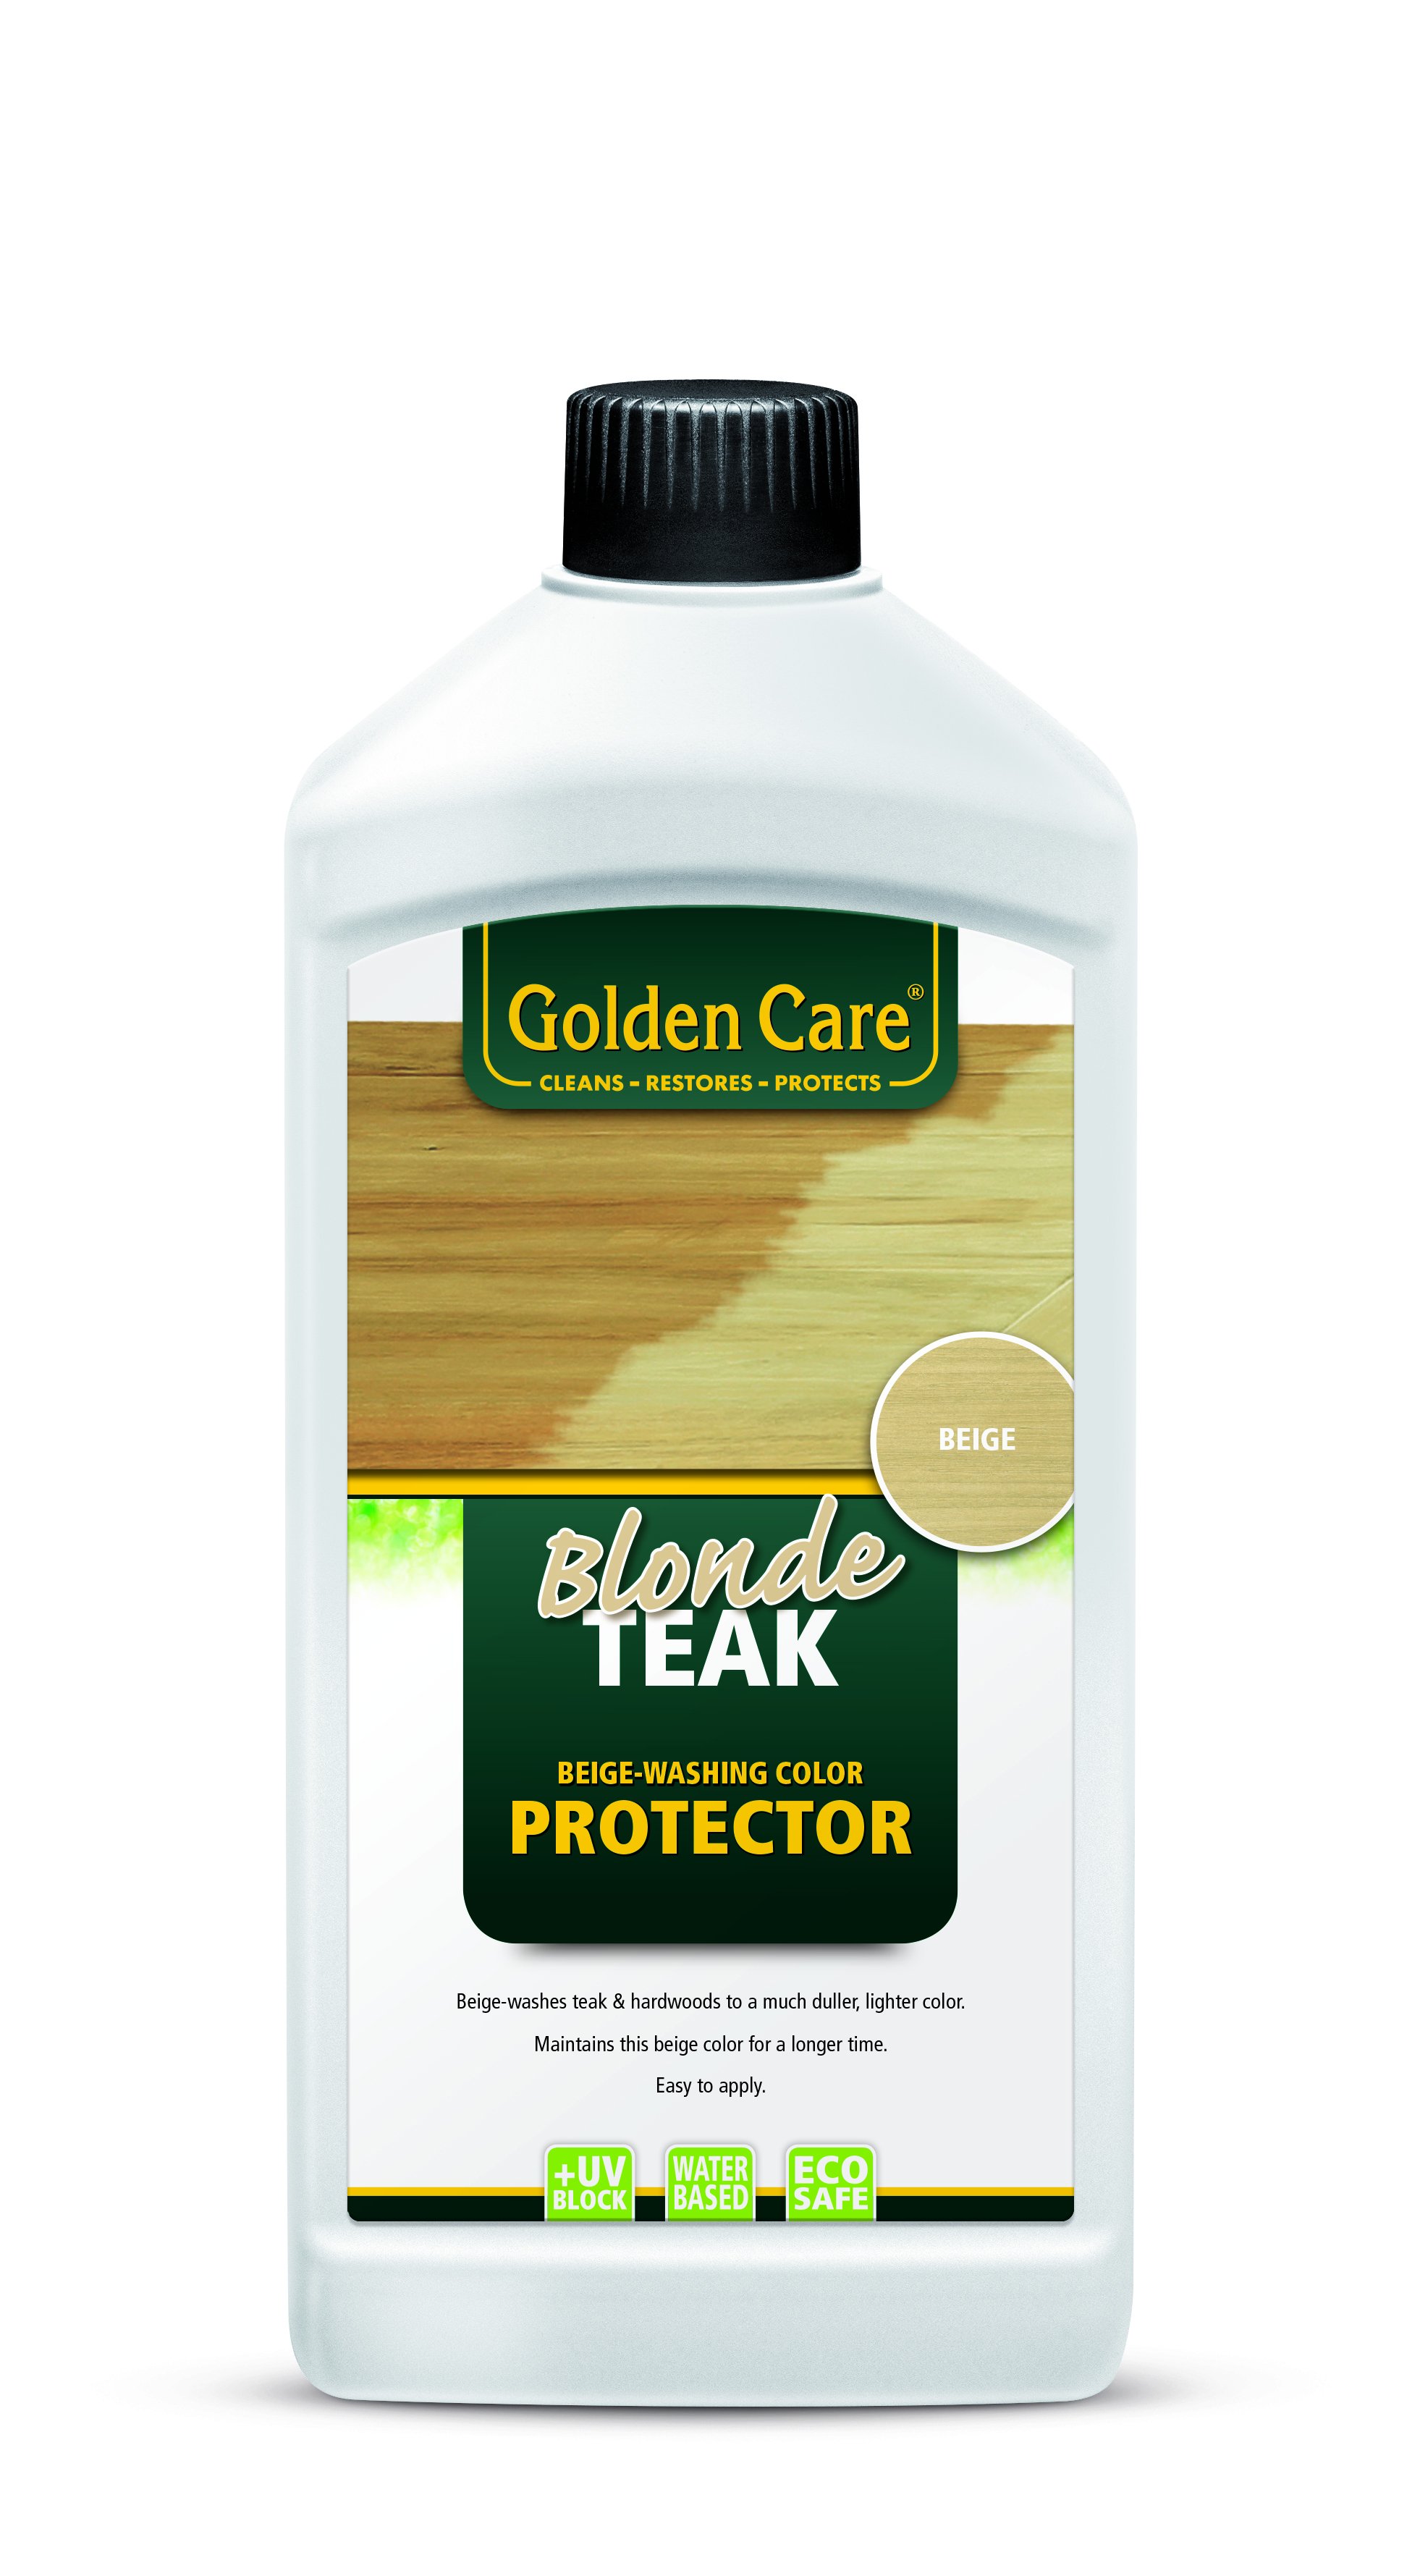 Golden Care Blonde Teak Protector - 1 Liter